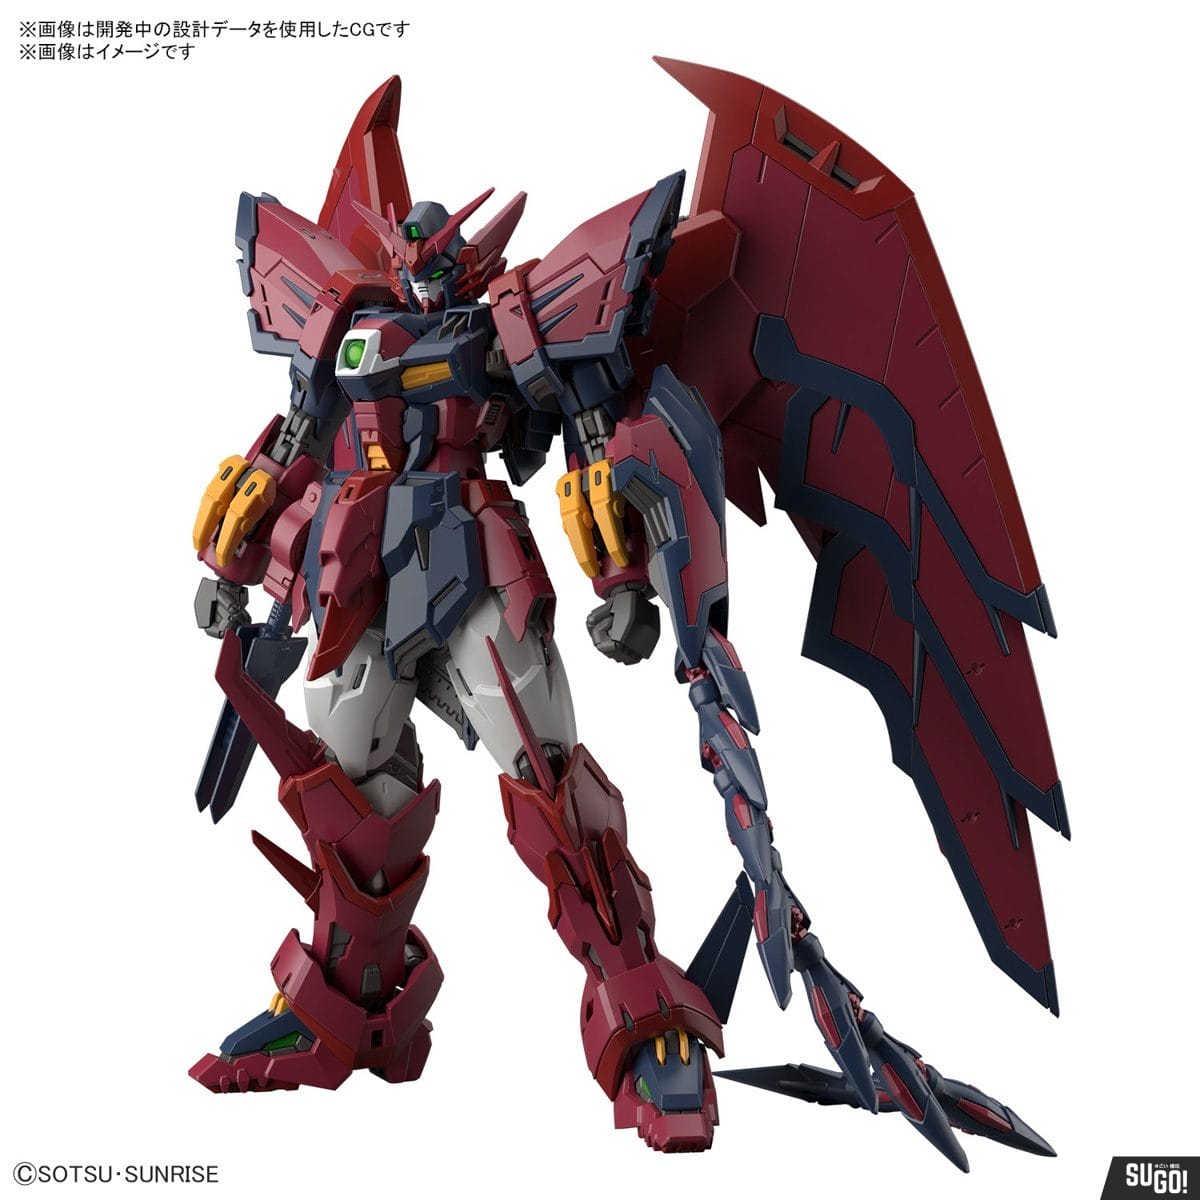 Bandai 1/144 RG Gundam Epyon (Mobile Suit Gundam Wing) Model Kit